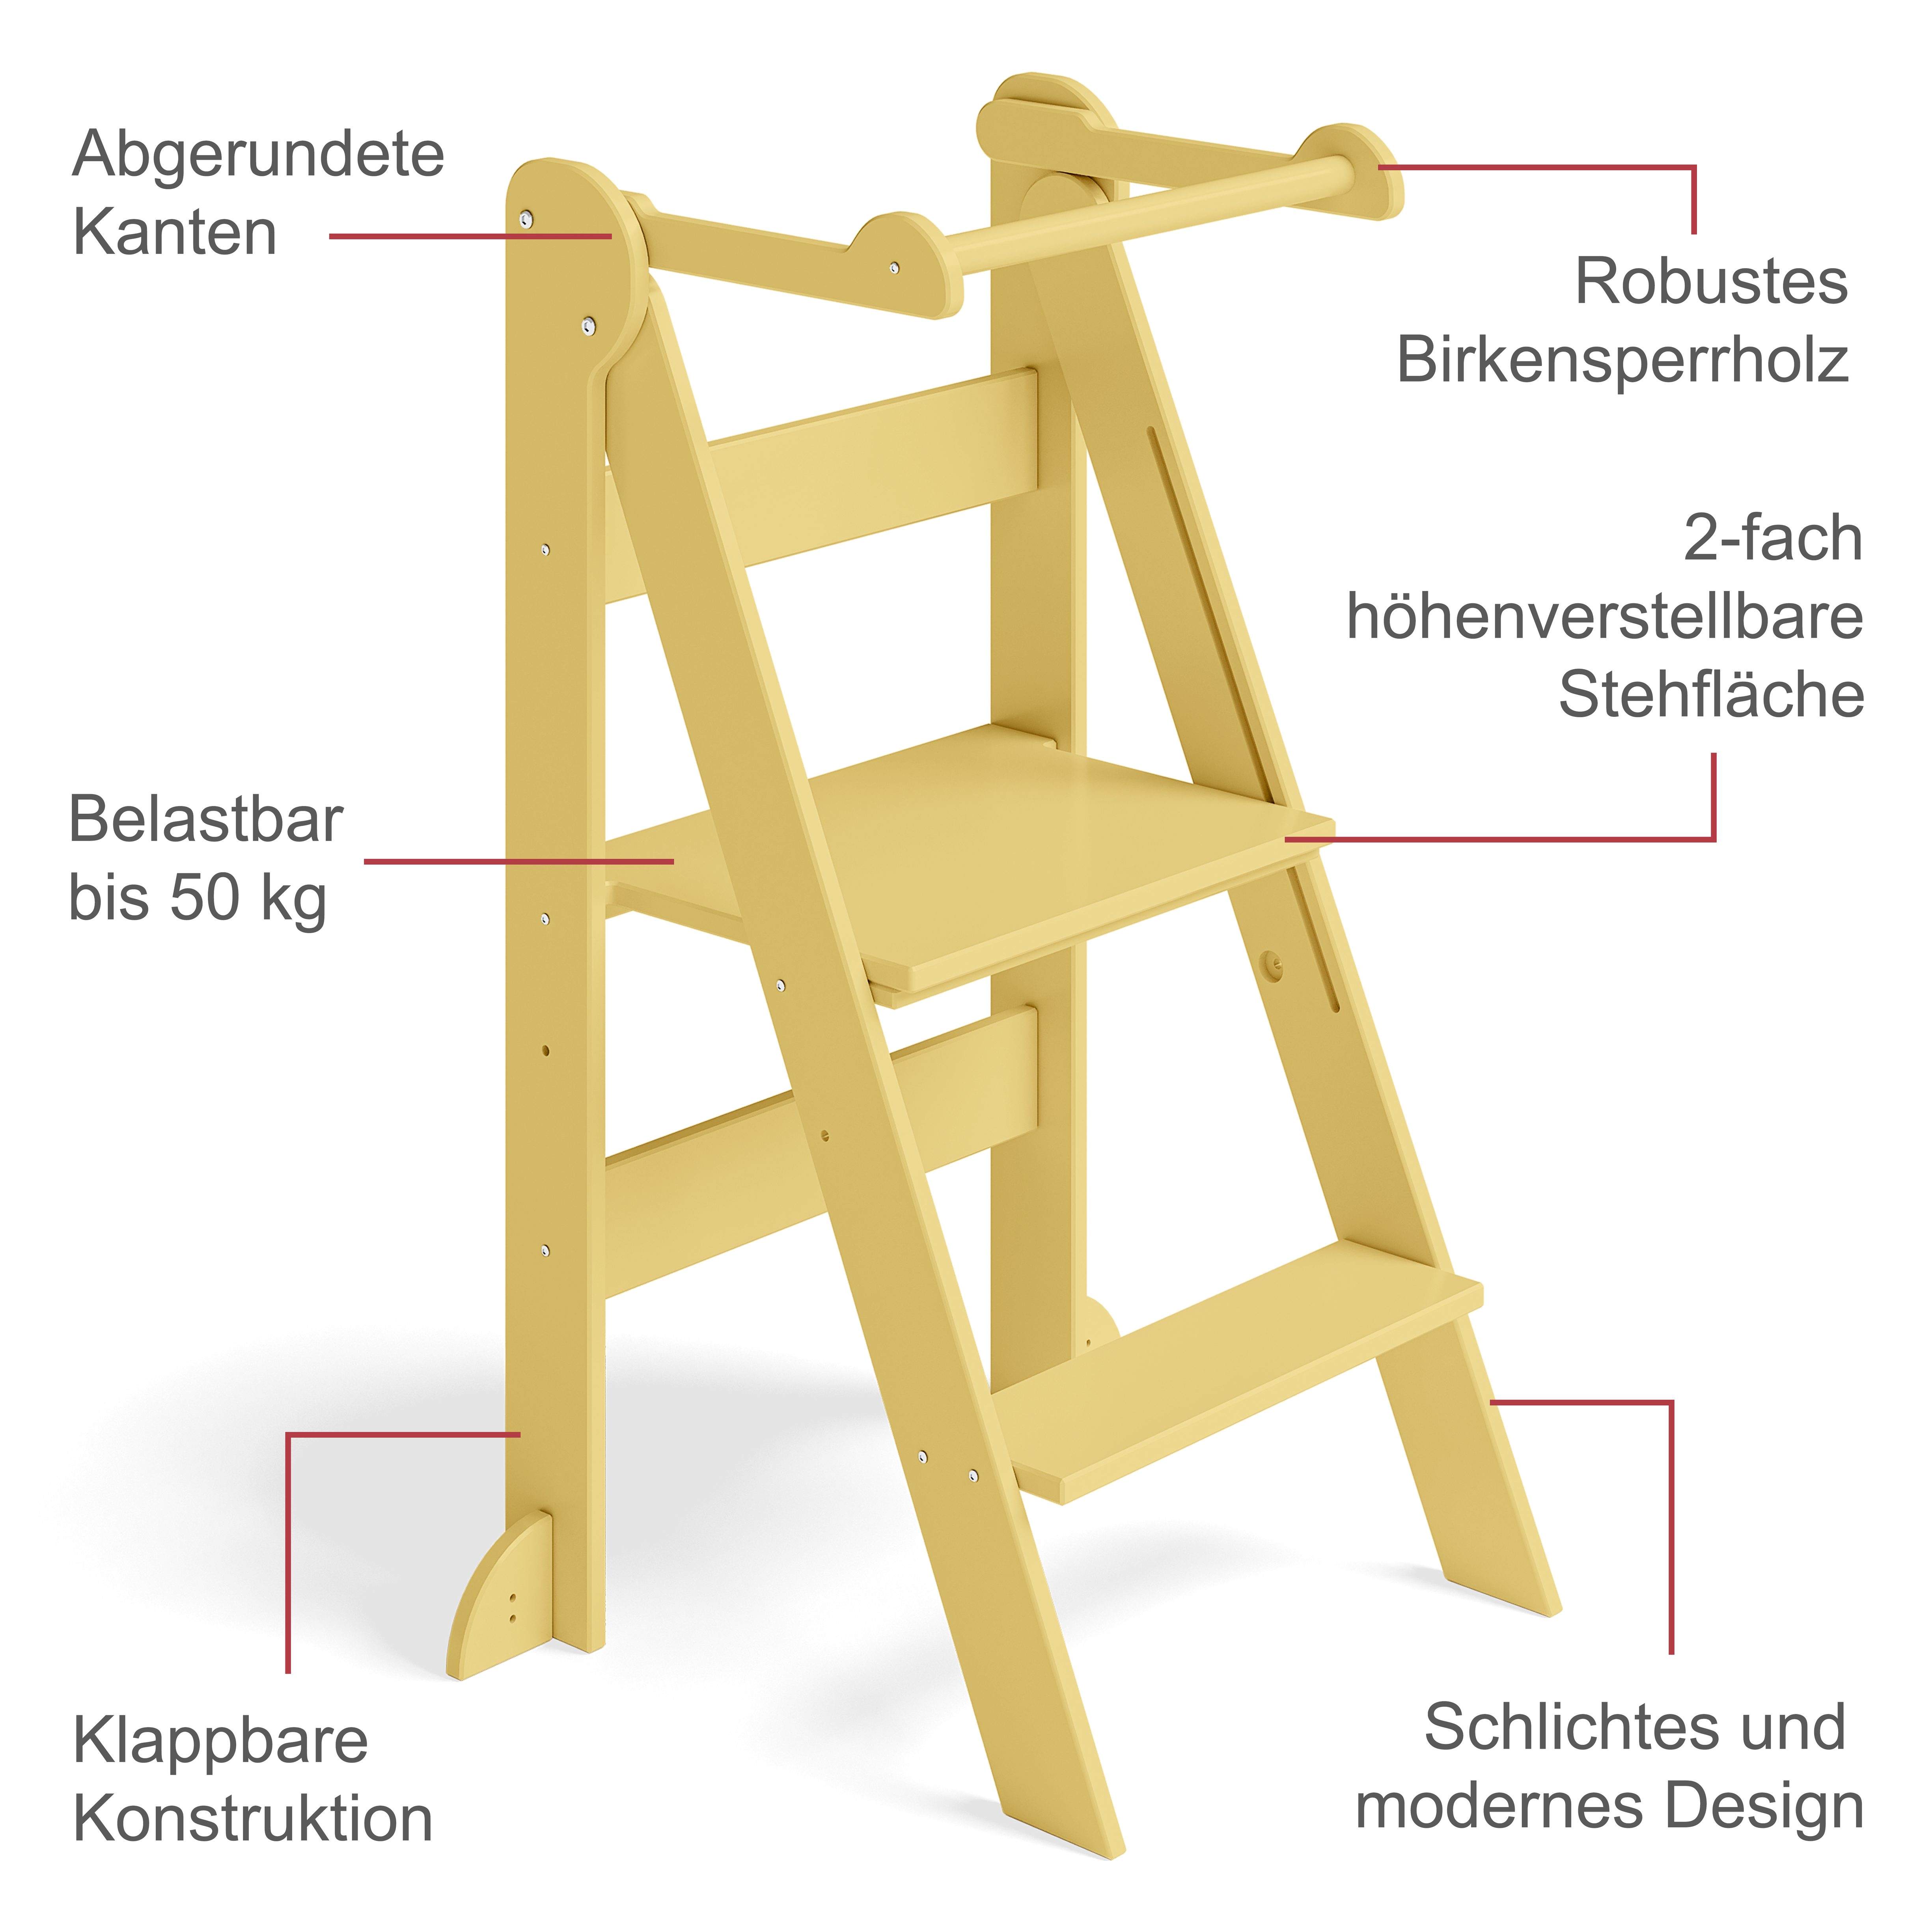 Bellabino Stehhilfe Tay (Lernturm), zusammenklappbar, höhenverstellbar, gelb gelb gelb | 2-fach